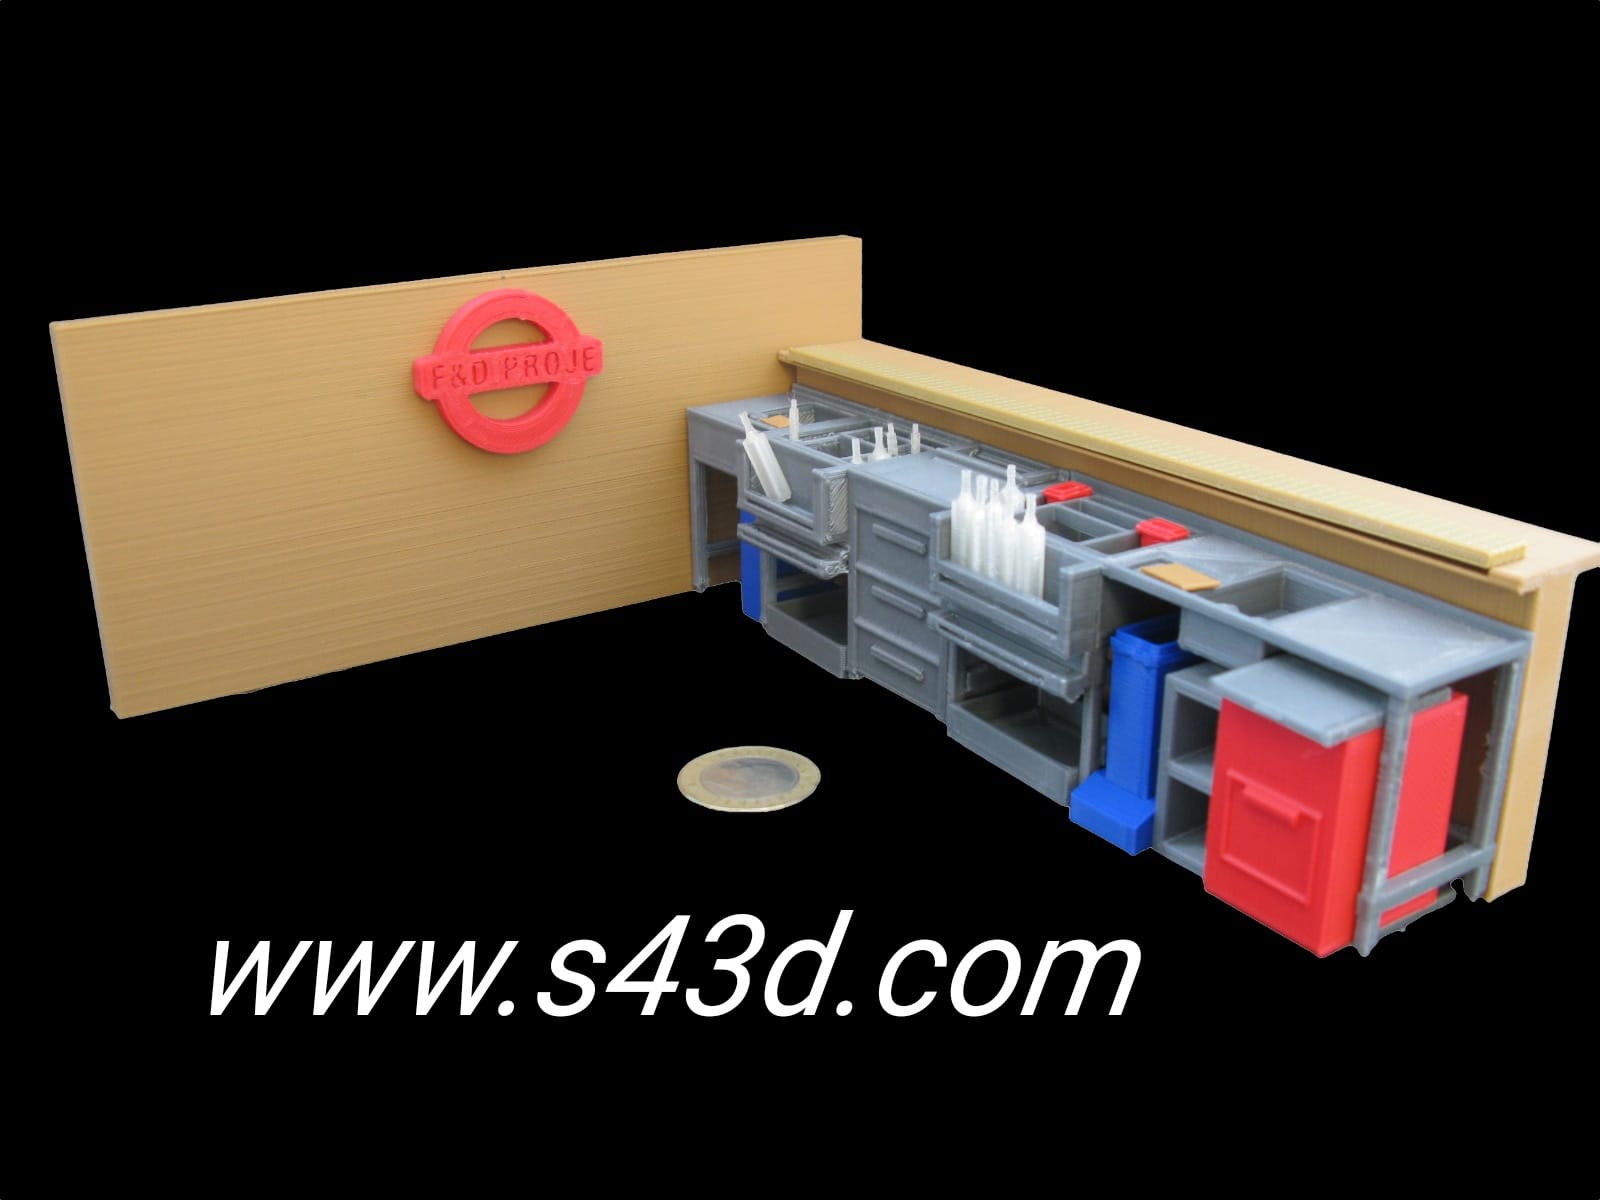 3D Baskı Görselleri 3d baskı